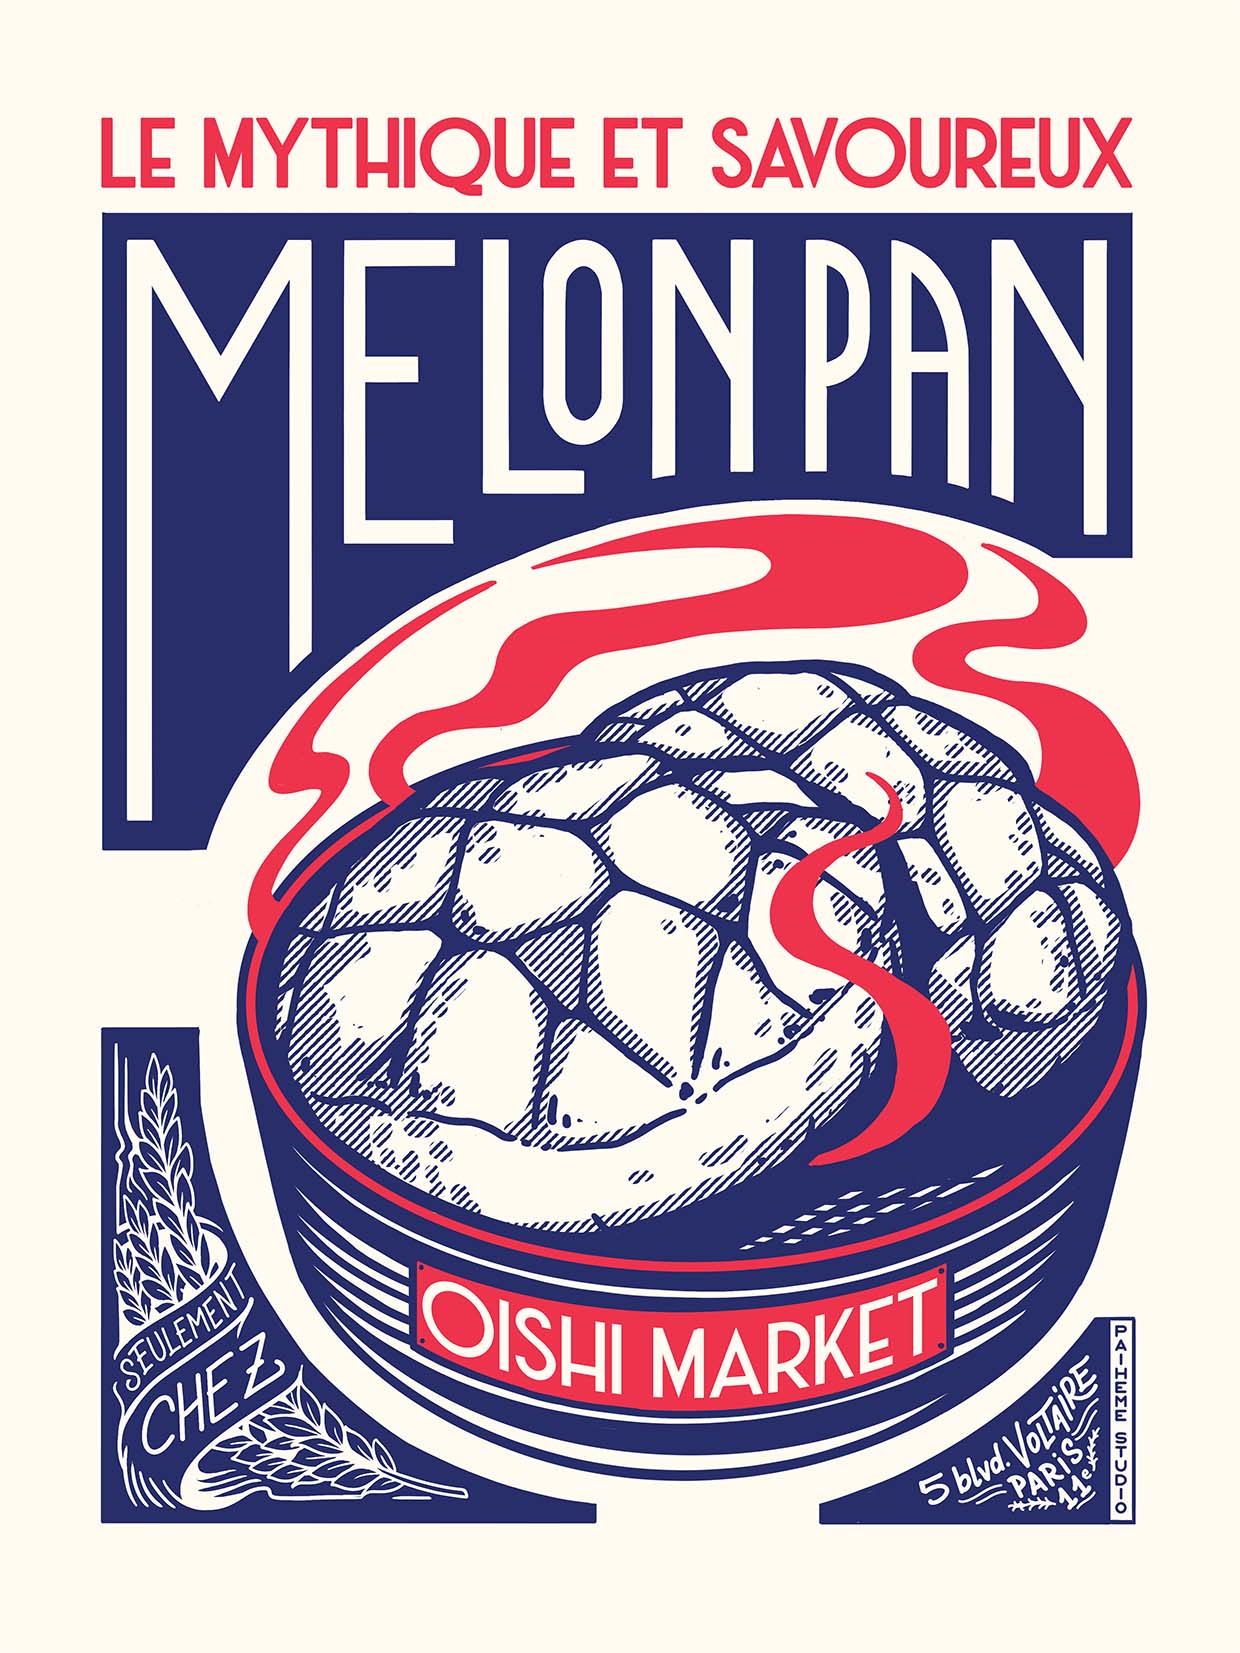 MELON PAN Print 🍜